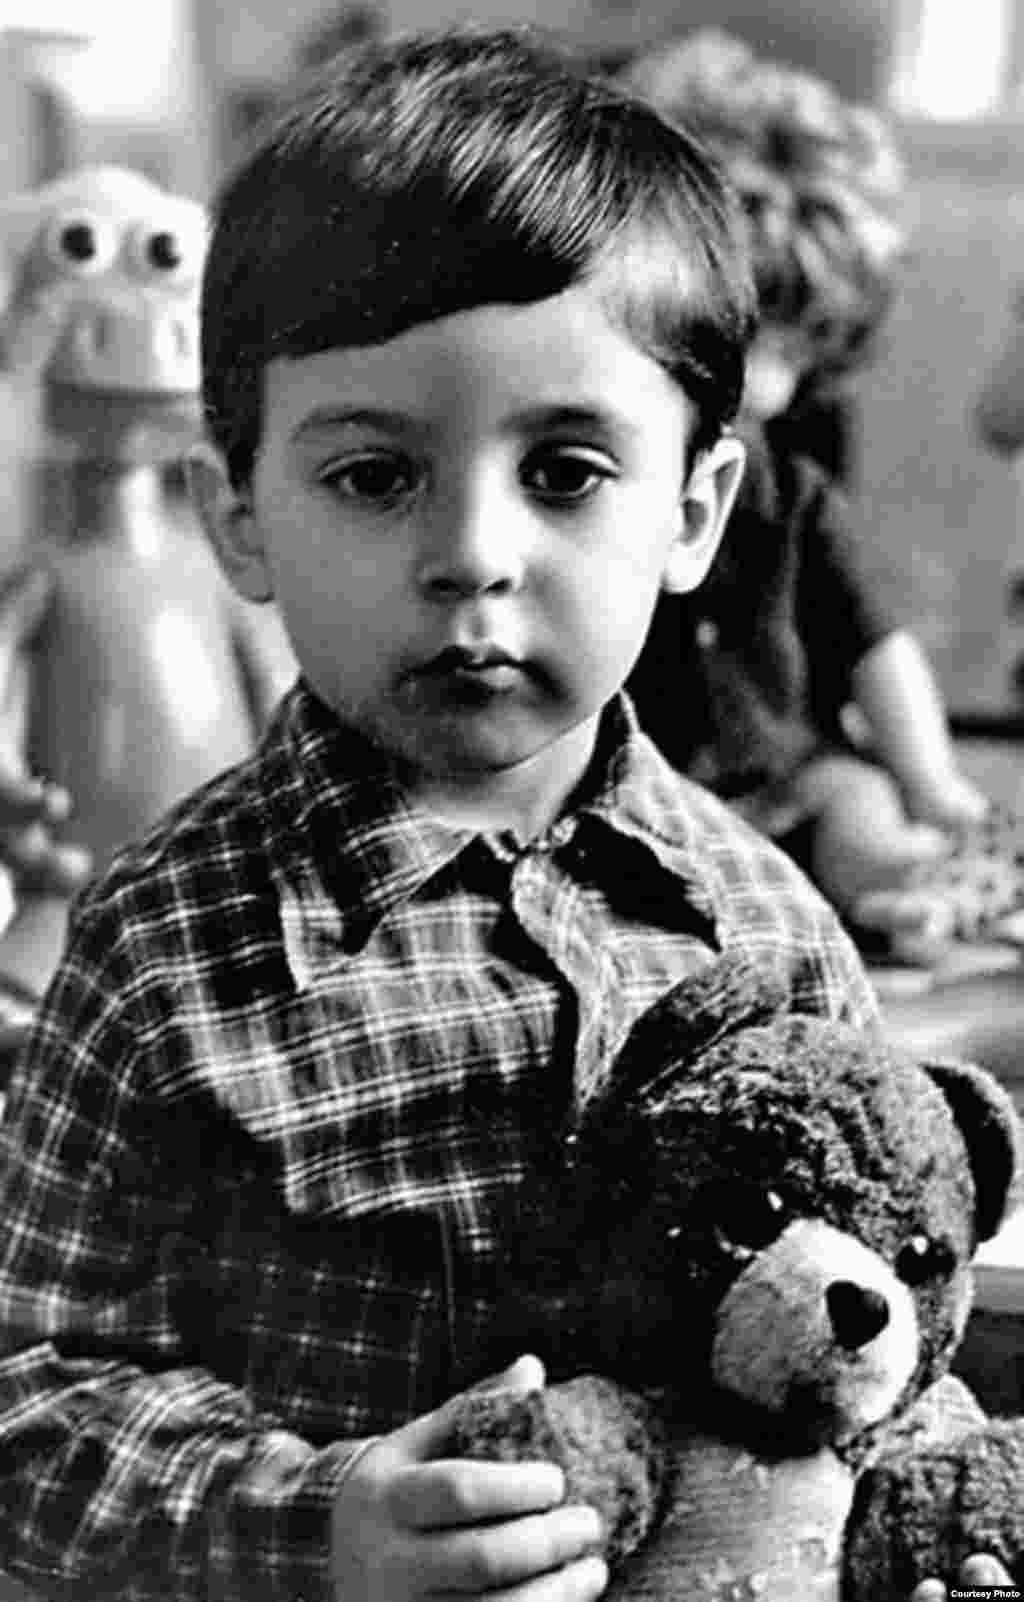 Этот очень серьезный мальчик &ndash; бывший комик и нынешний президент Украины Владимир Зеленский. Фото сделано в конце 1970-х или в начале 1980-х годов